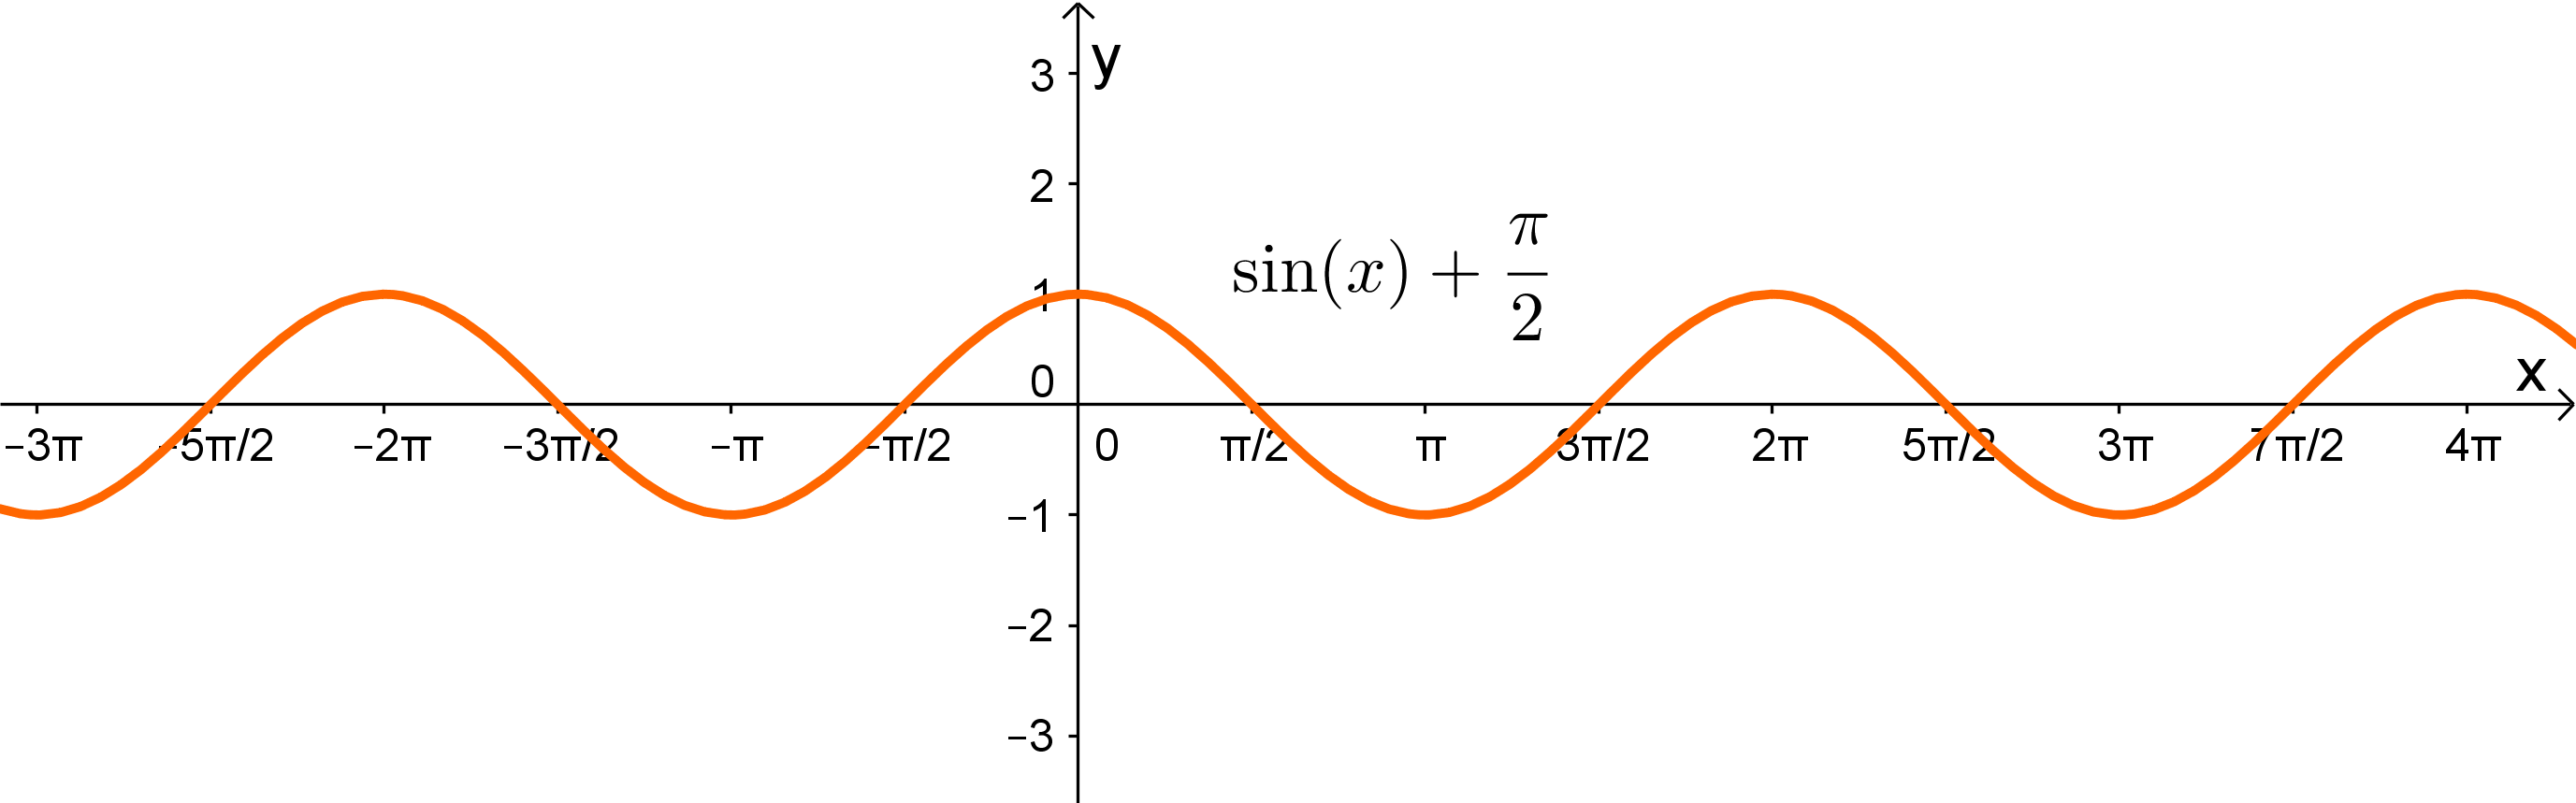 Graph zu einer Sinus Funktion